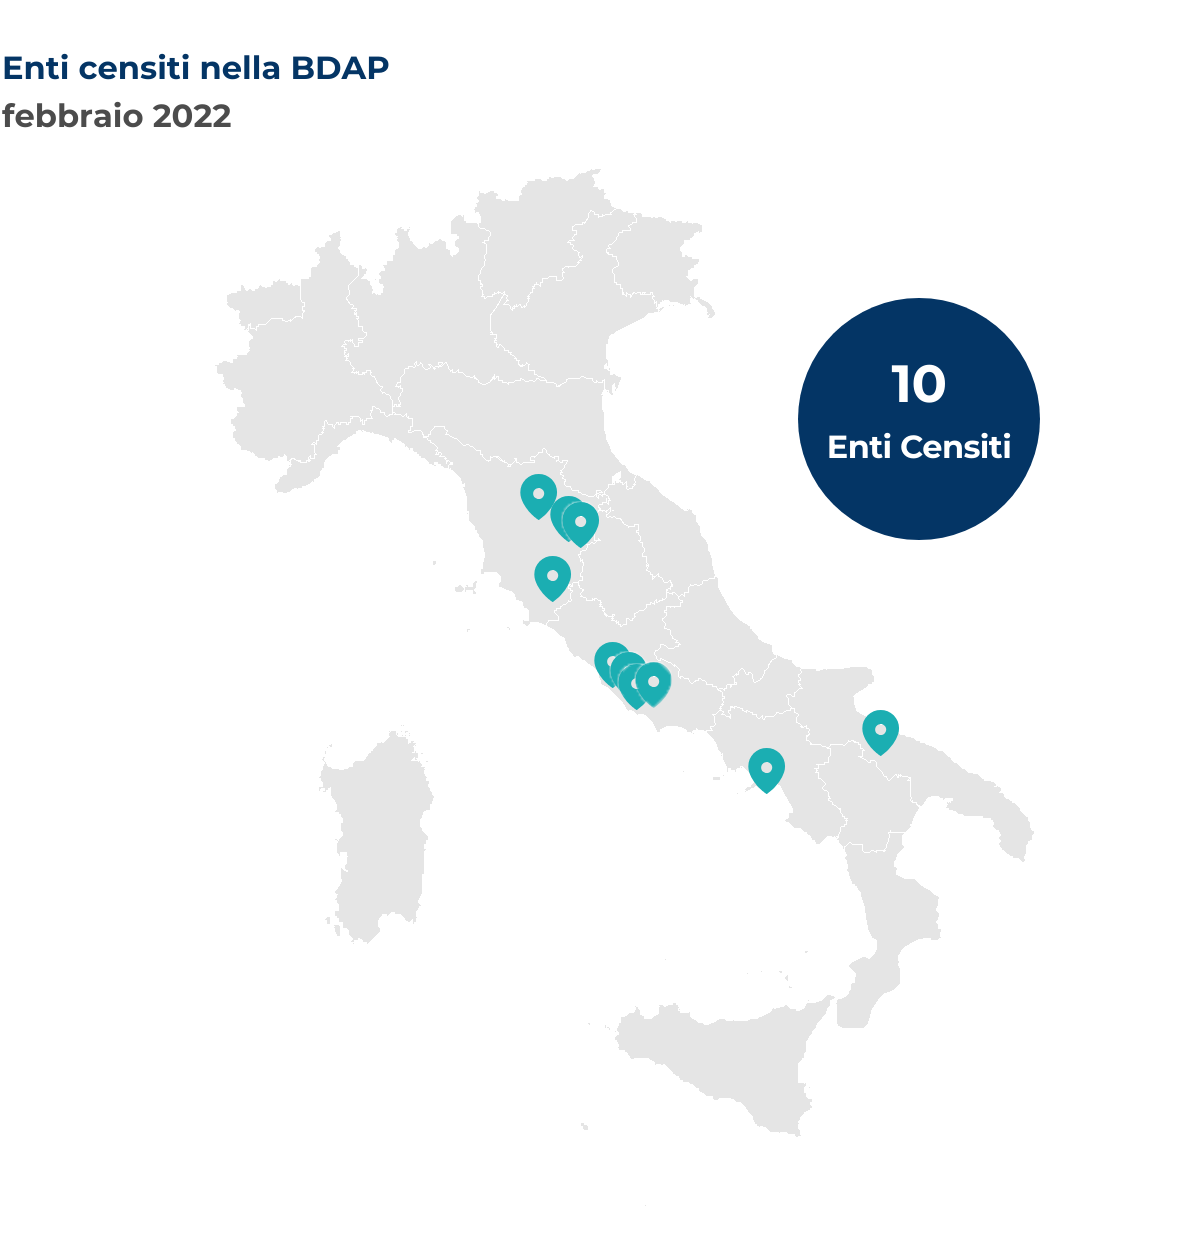 Mappa dell'Italia che mostra la localizzazione degli enti censiti nella BDAP. Nel mese di febbraio 2022 sono stati censiti 10 nuovi enti così distribuiti per regione: Campania 1 ente; Lazio 4 enti; Puglia 1 ente; Toscana 4 enti.